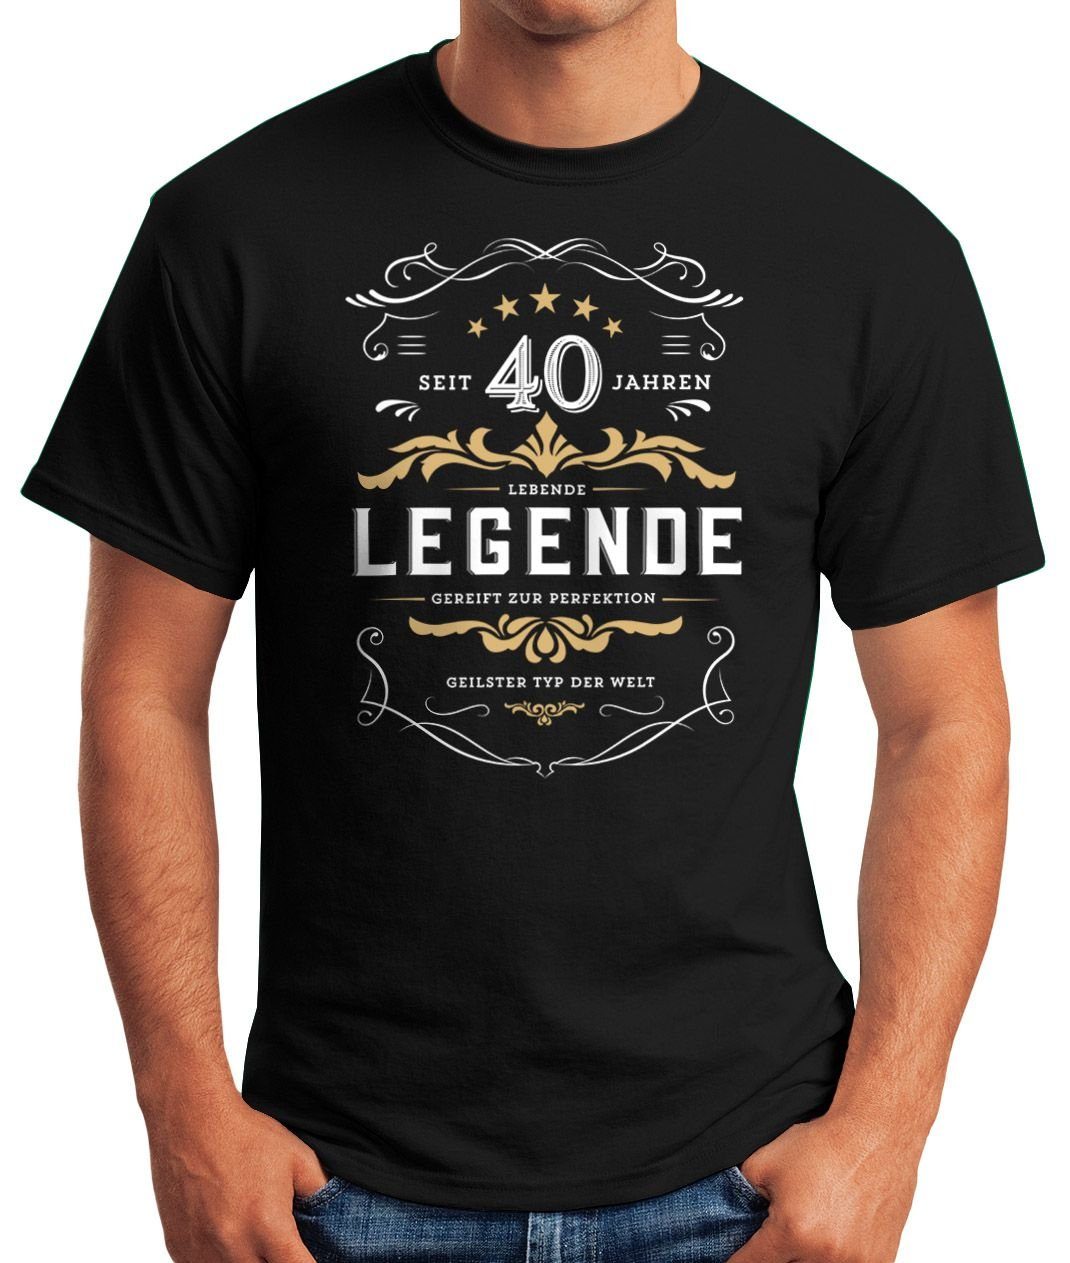 Print Jahre MoonWorks 30-80 40 mit Geburtstag Lebende Moonworks® Legende Geschenk T-Shirt Herren Print-Shirt schwarz